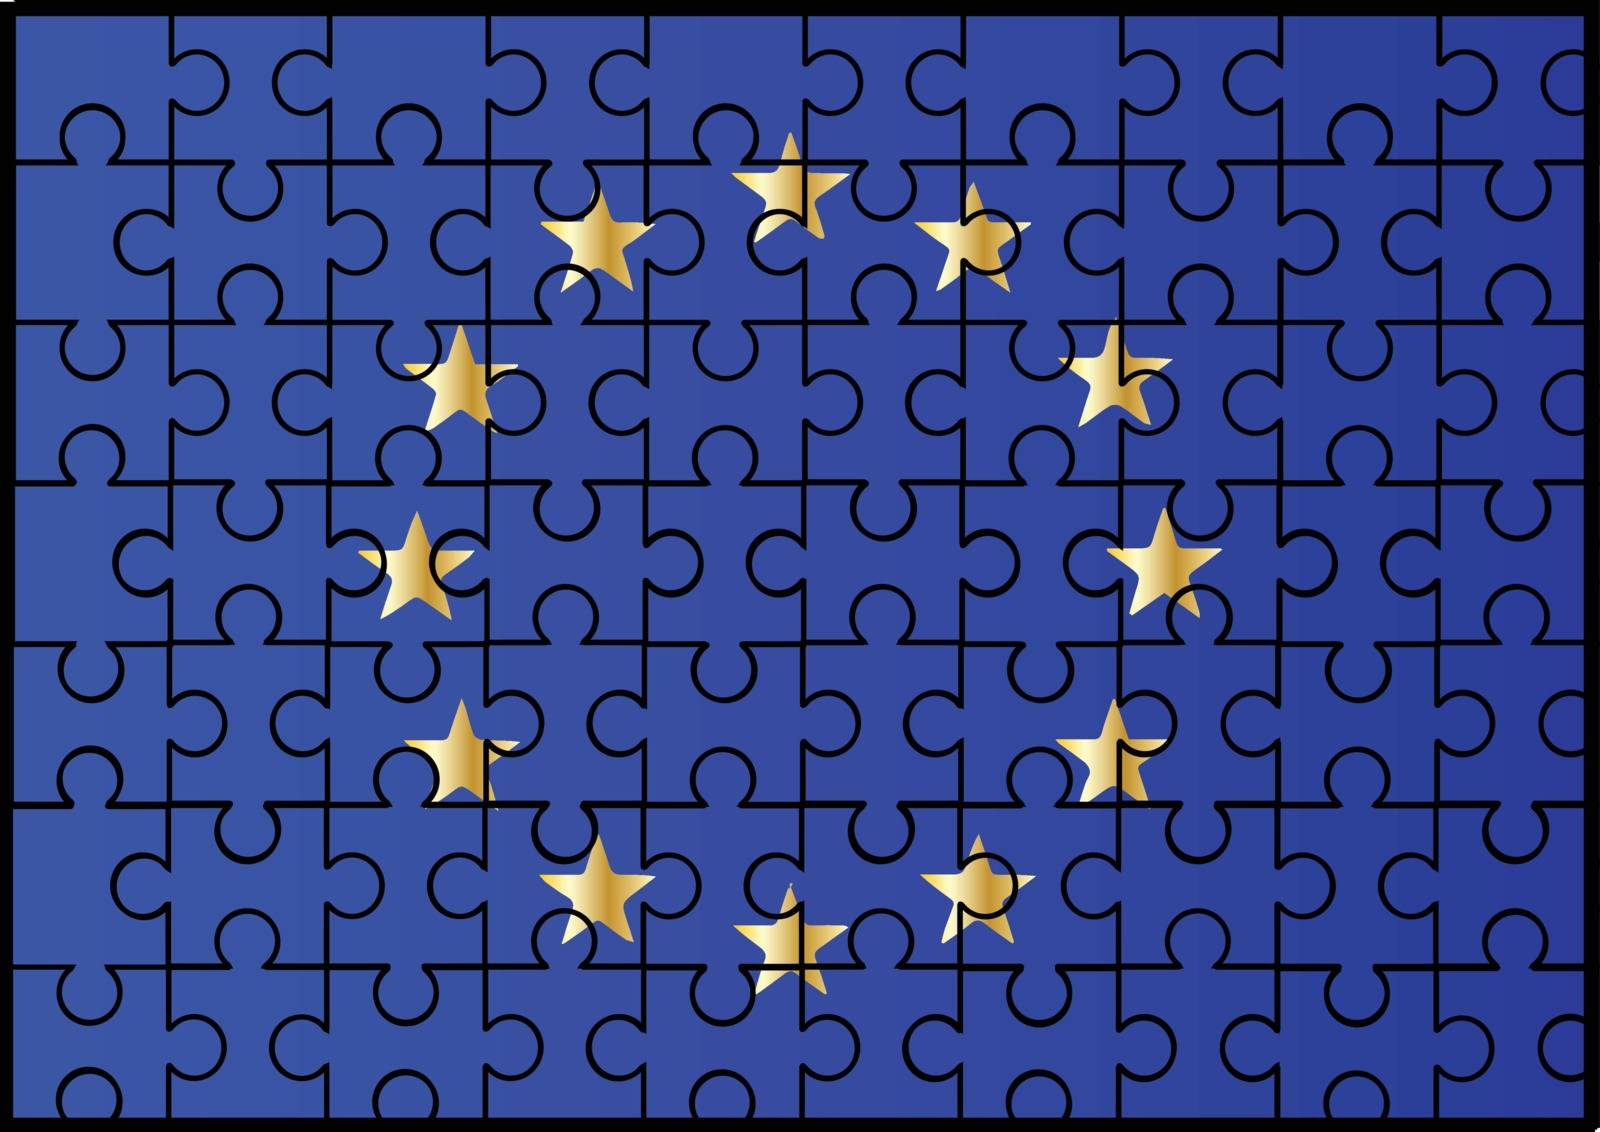 The European Union EU flag with a jigsaw overlay